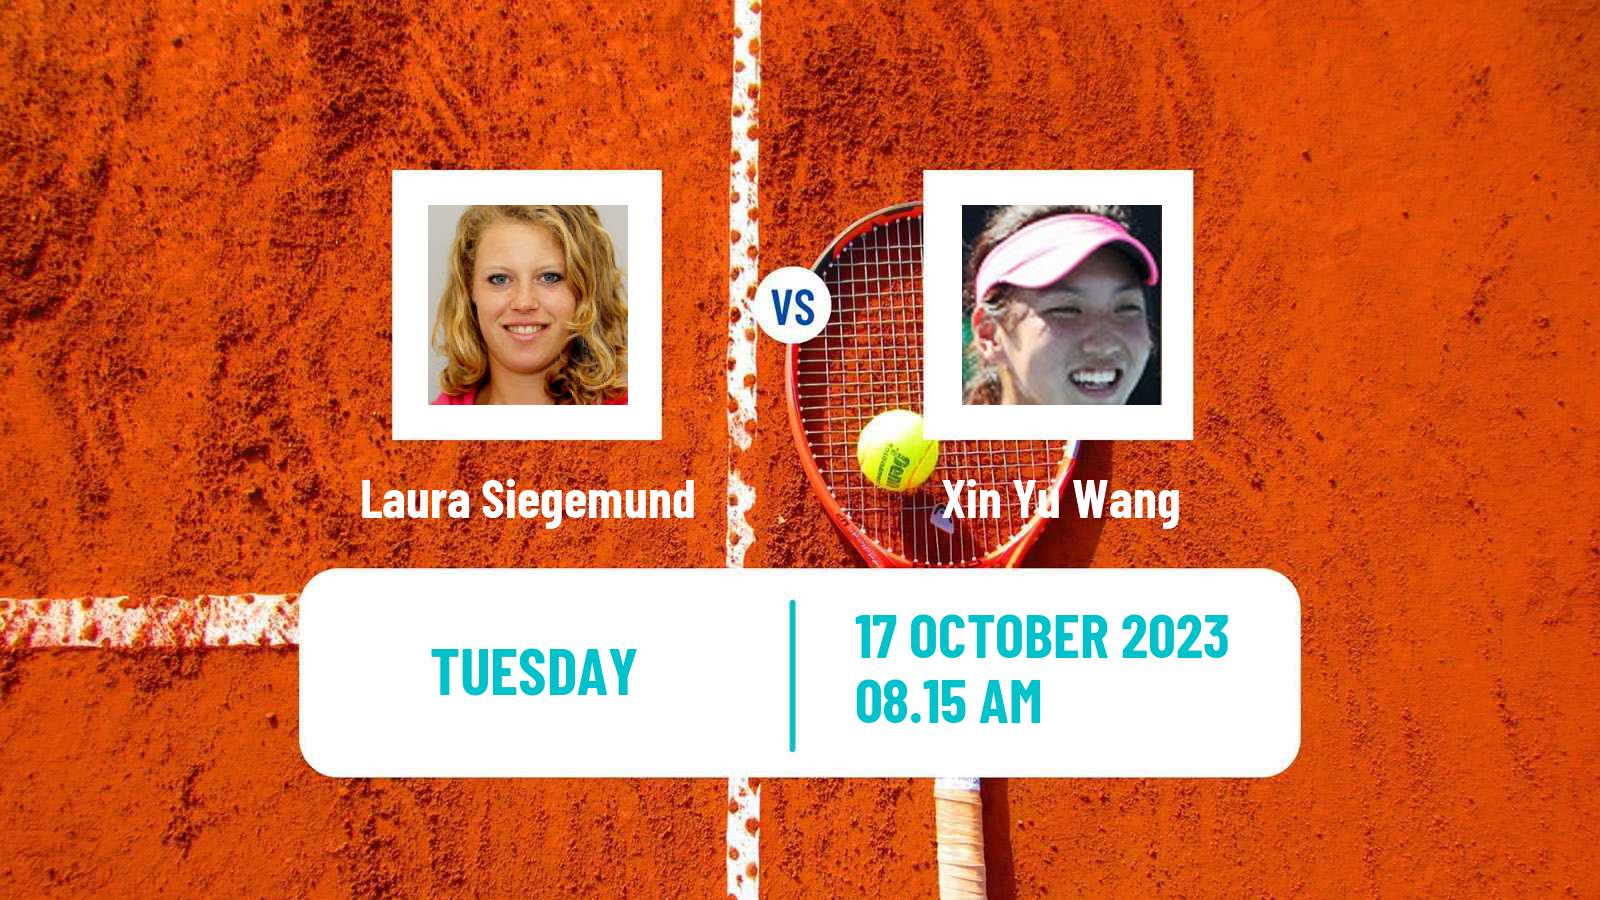 Tennis WTA Nanchang Laura Siegemund - Xin Yu Wang